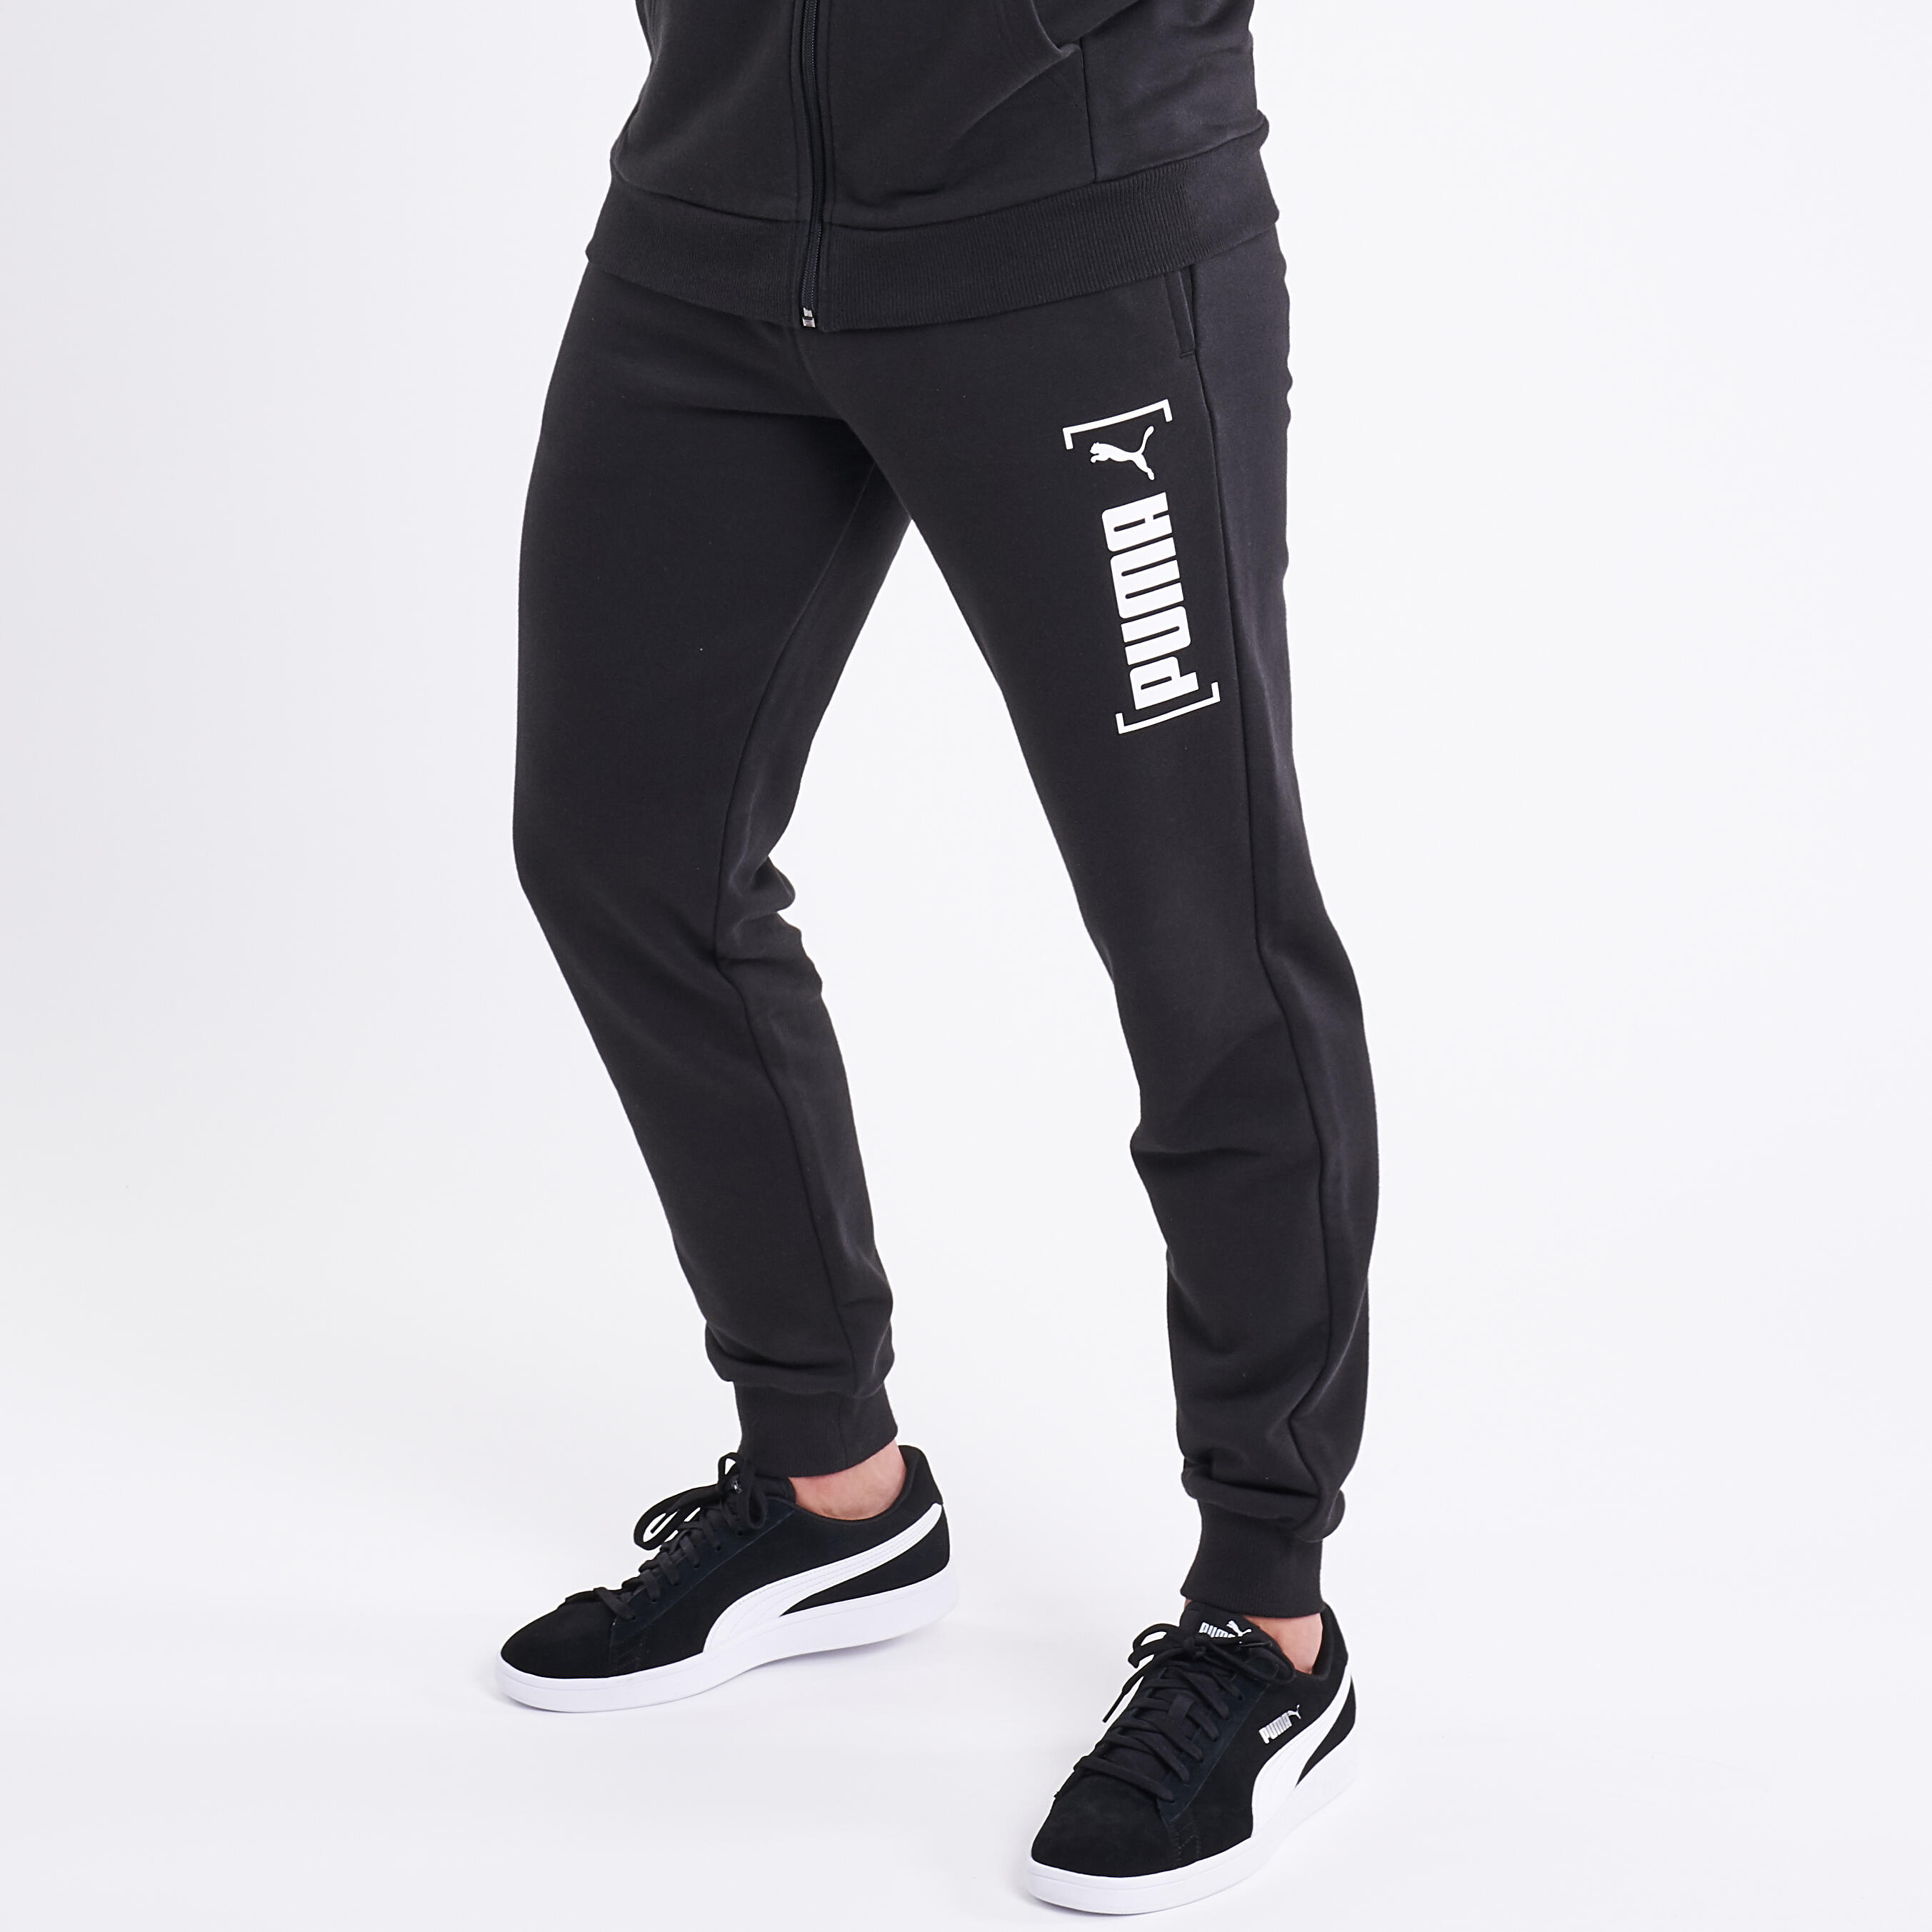 Pantalon de survêtement Puma Fitness coton bio Noir